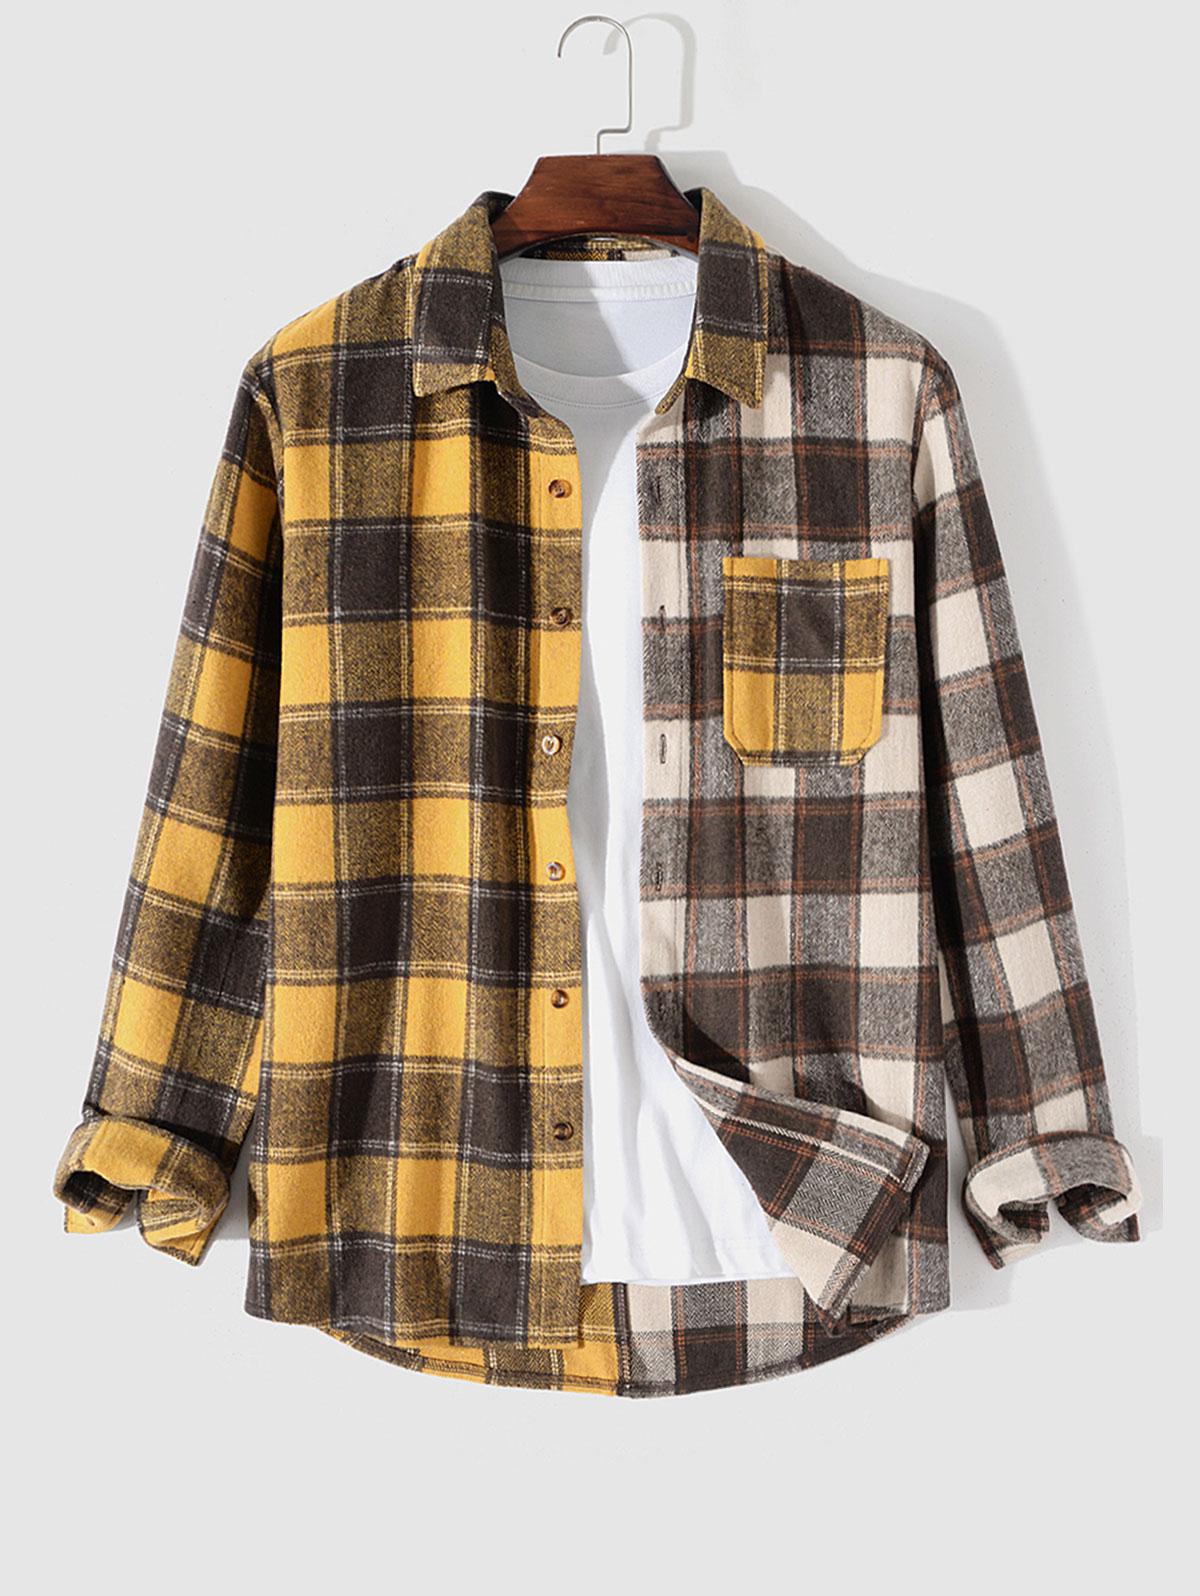 ZAFUL Men's Colorblock Plaid Pocket Flannel Shirt Xxl Multi b